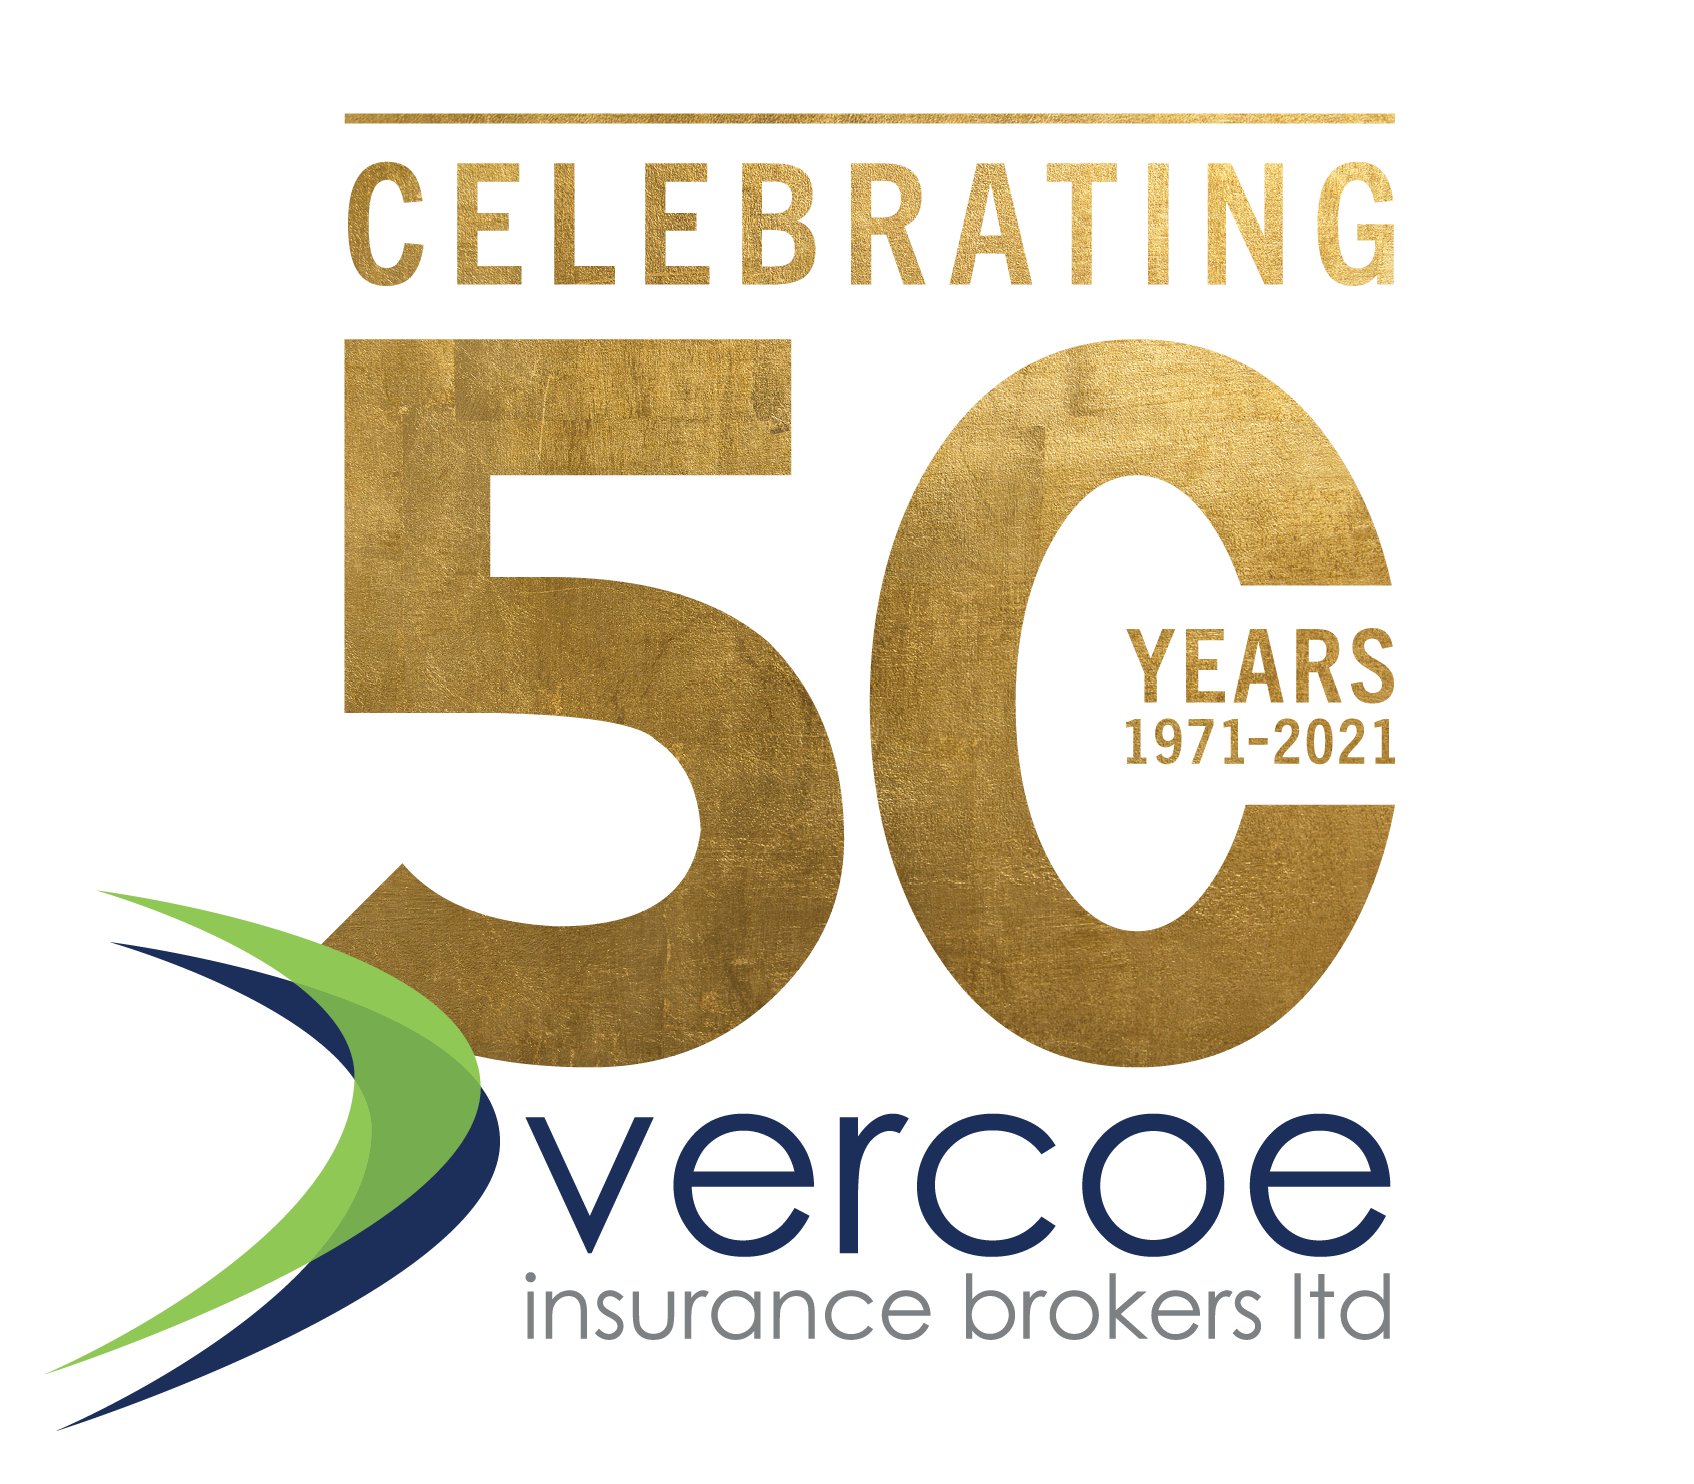 Vercoe Insurance Brokers